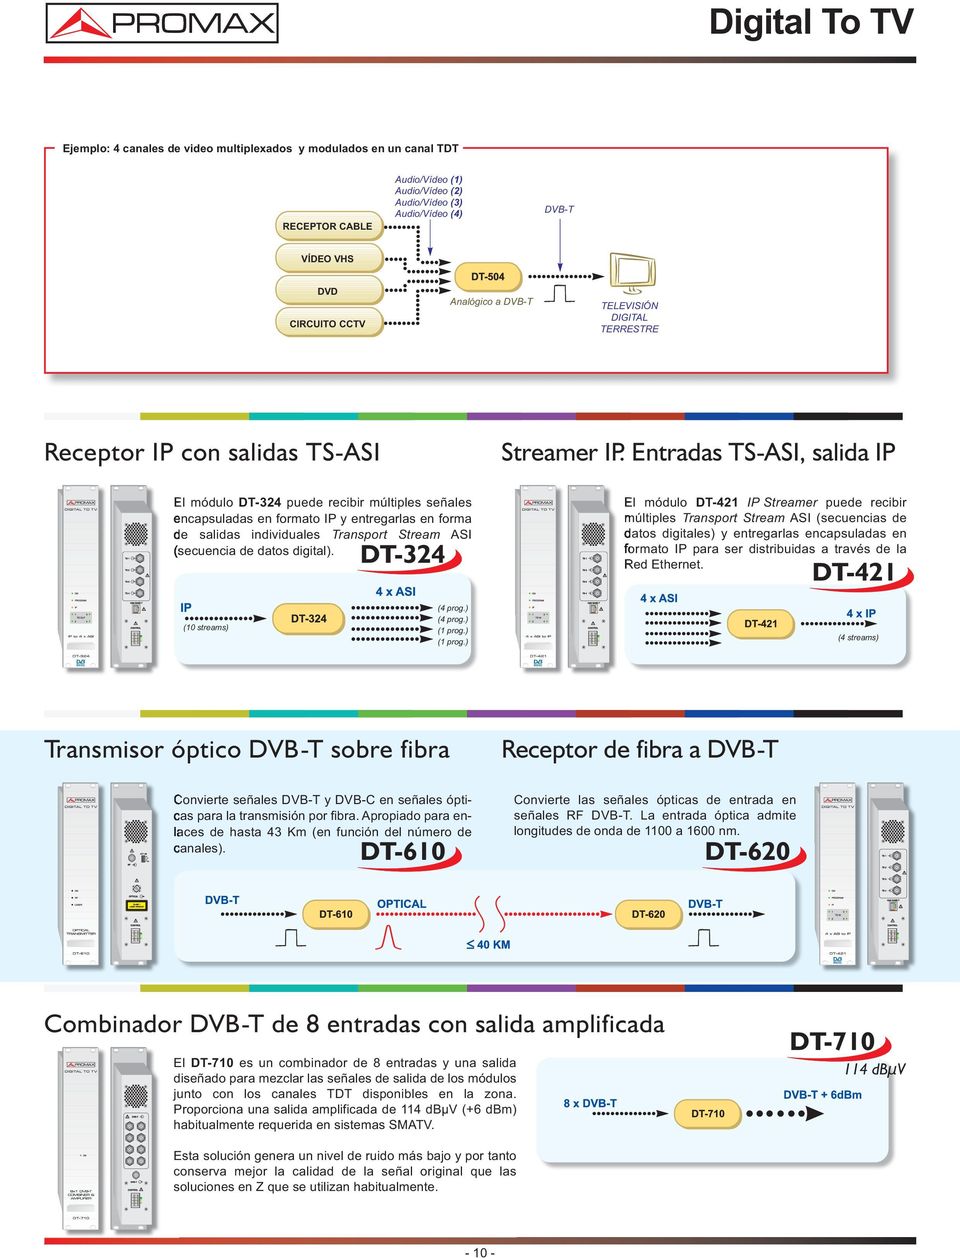 Entradas TS-ASI, salida IP El módulo DT-324 puede recibir múltiples señales encapsuladas en formato IP y entregarlas en forma de salidas individuales Transport Stream ASI (secuencia de datos digital).